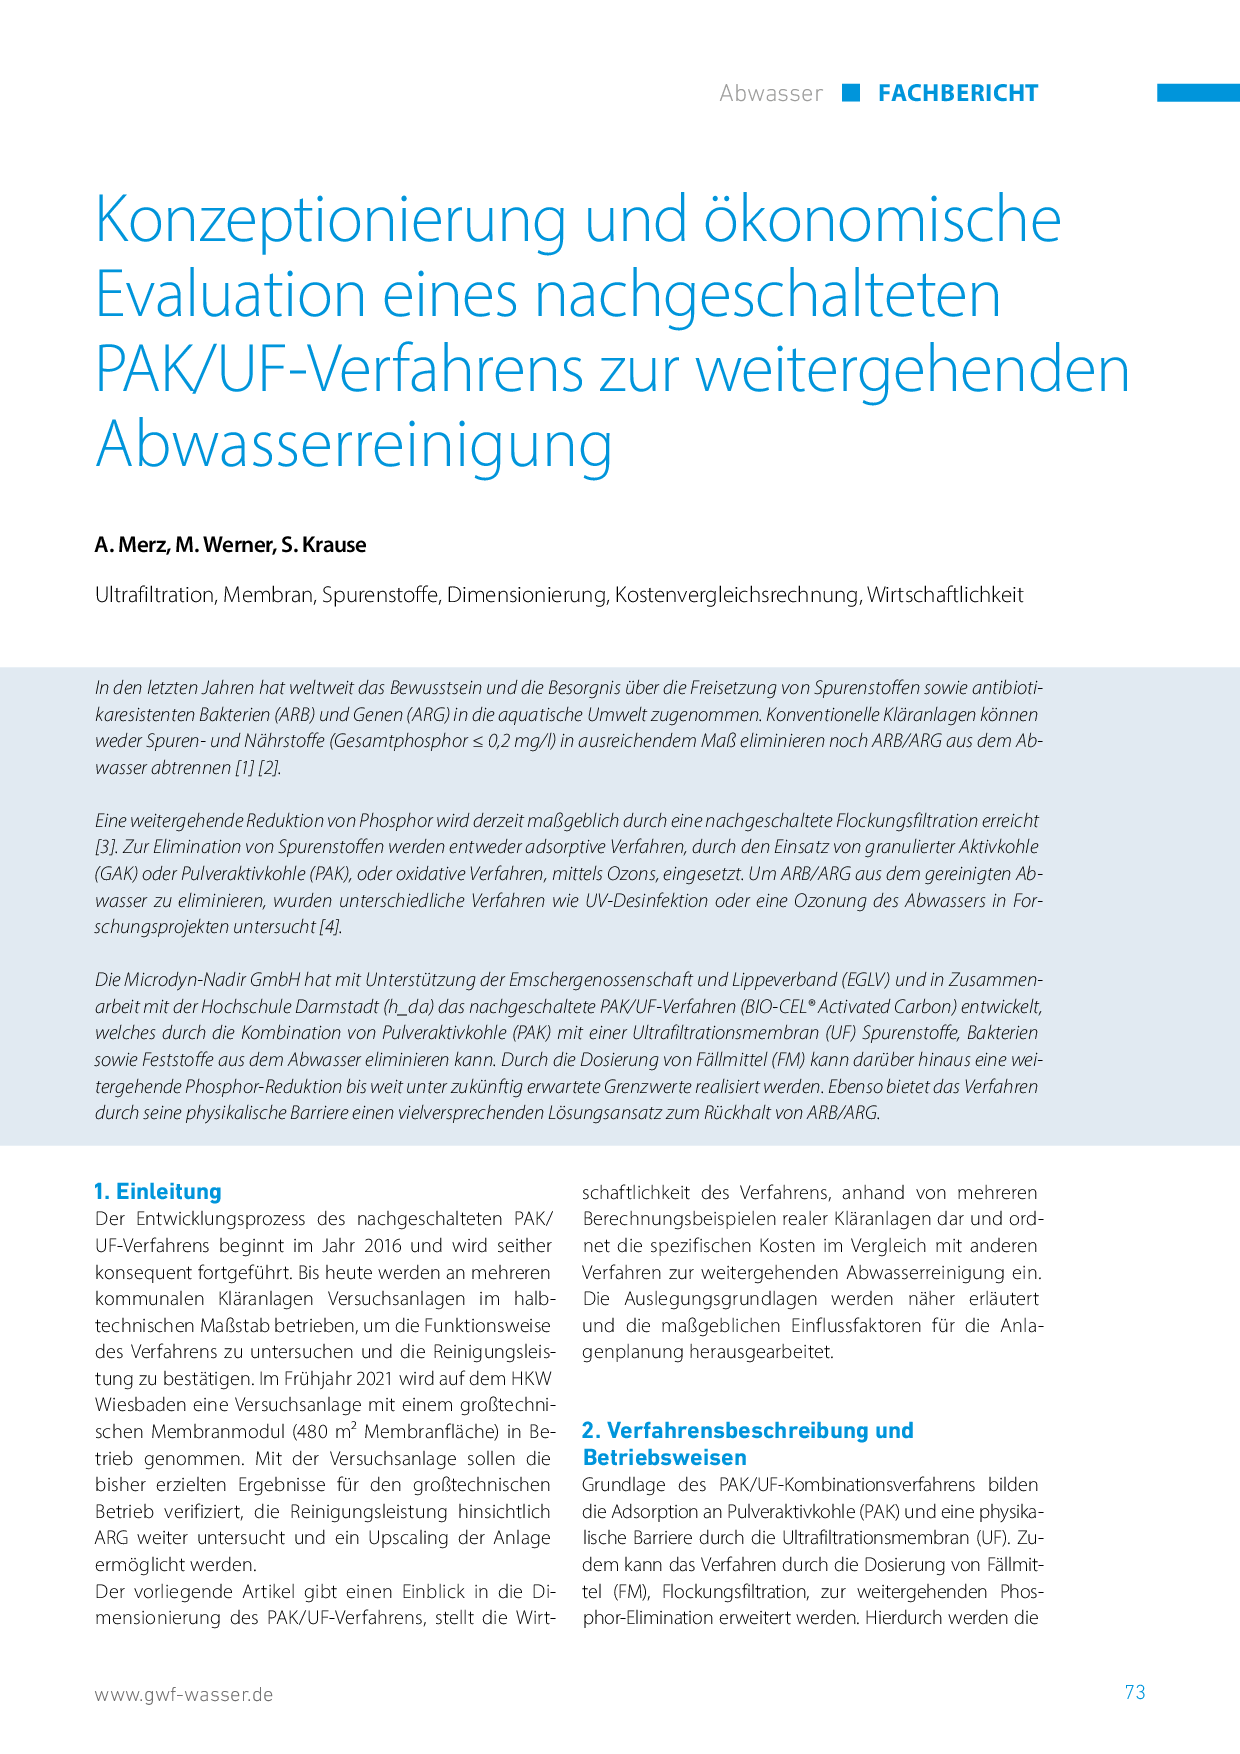 Konzeptionierung und ökonomische Evaluation eines nachgeschalteten PAK/UF-Verfahrens zur weitergehenden Abwasserreinigung